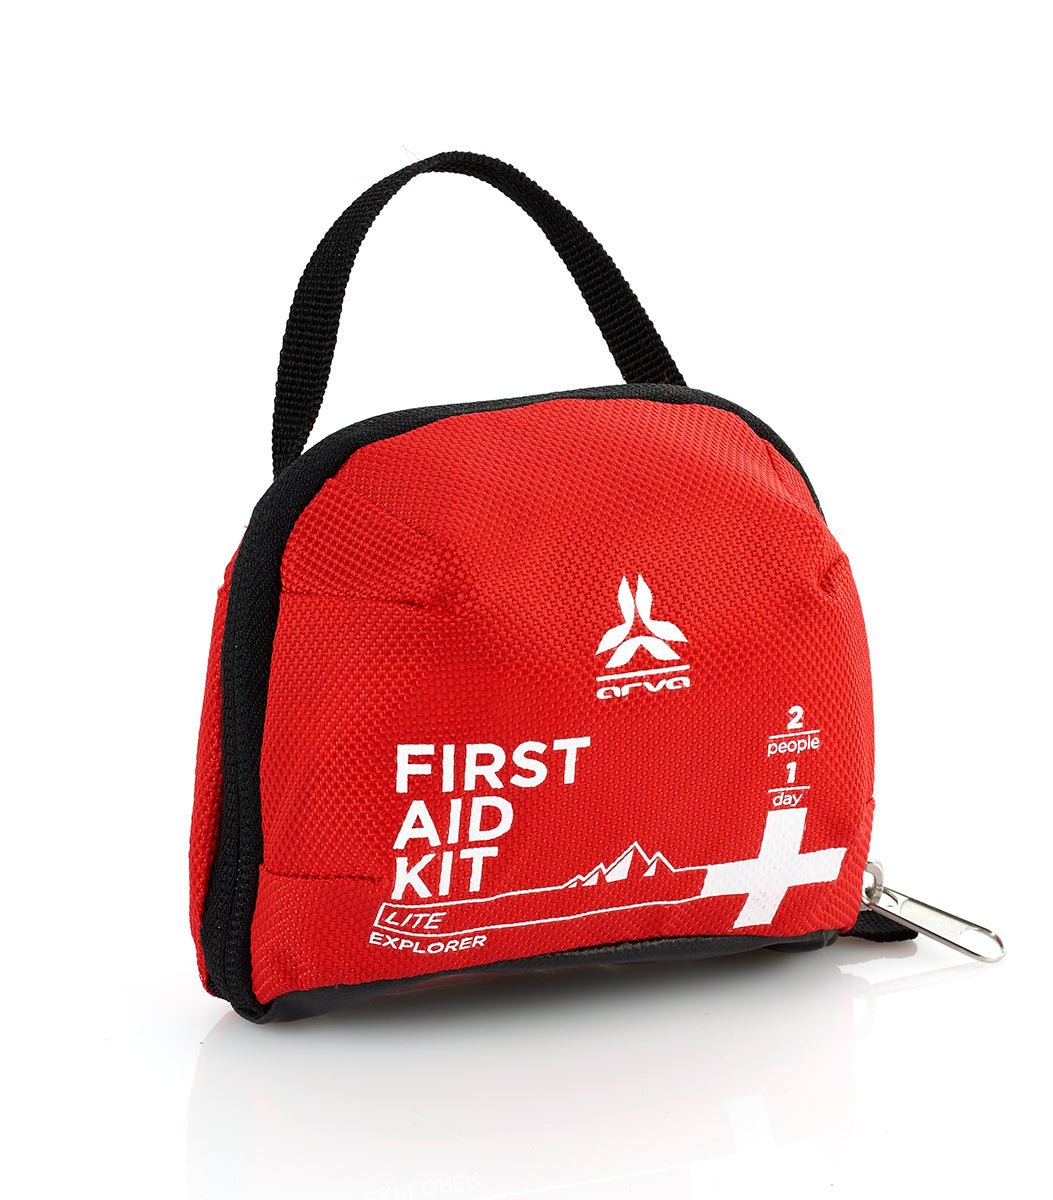 First Aid Kit Lite Explorer Full